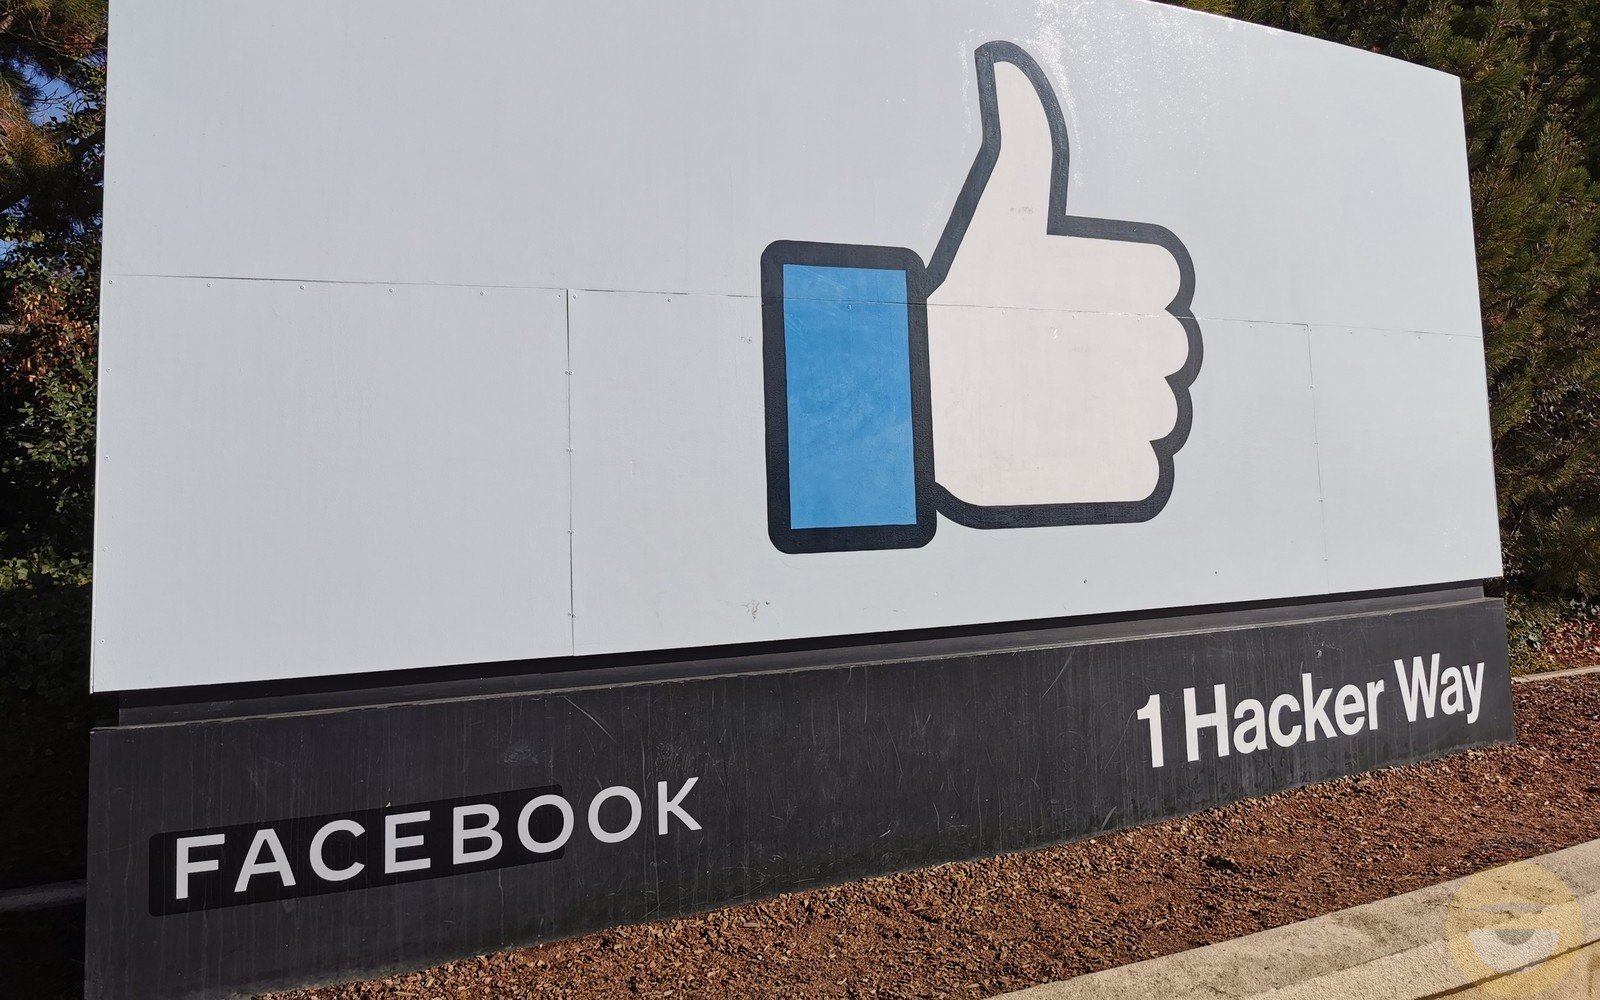 Το Facebook σύμφωνα με αναφορές αλλάζει την ονομασία του